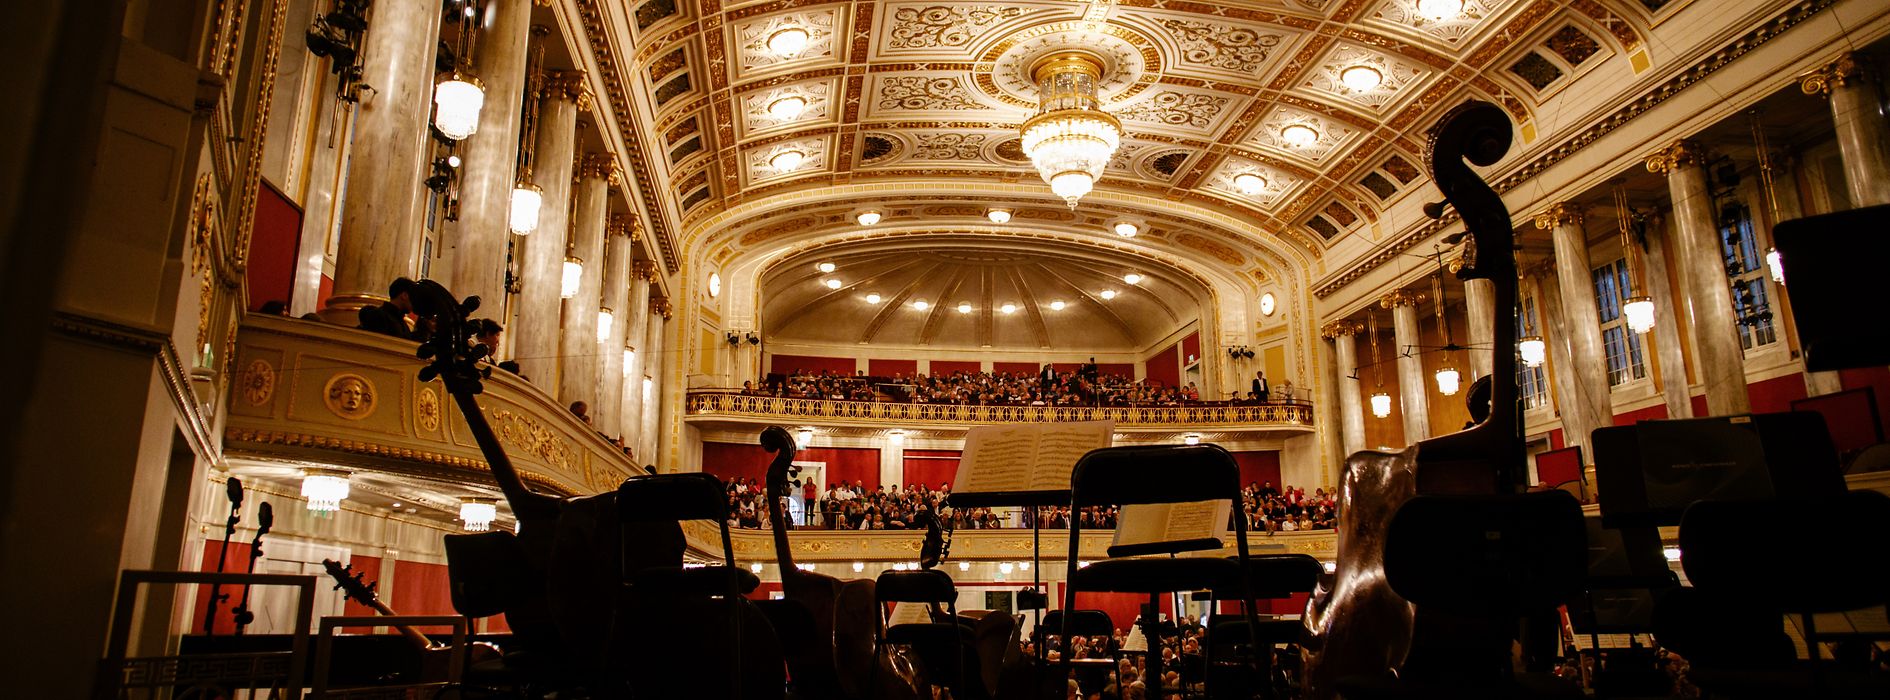 コンツェルトハウス、ウィーン交響楽団の楽器